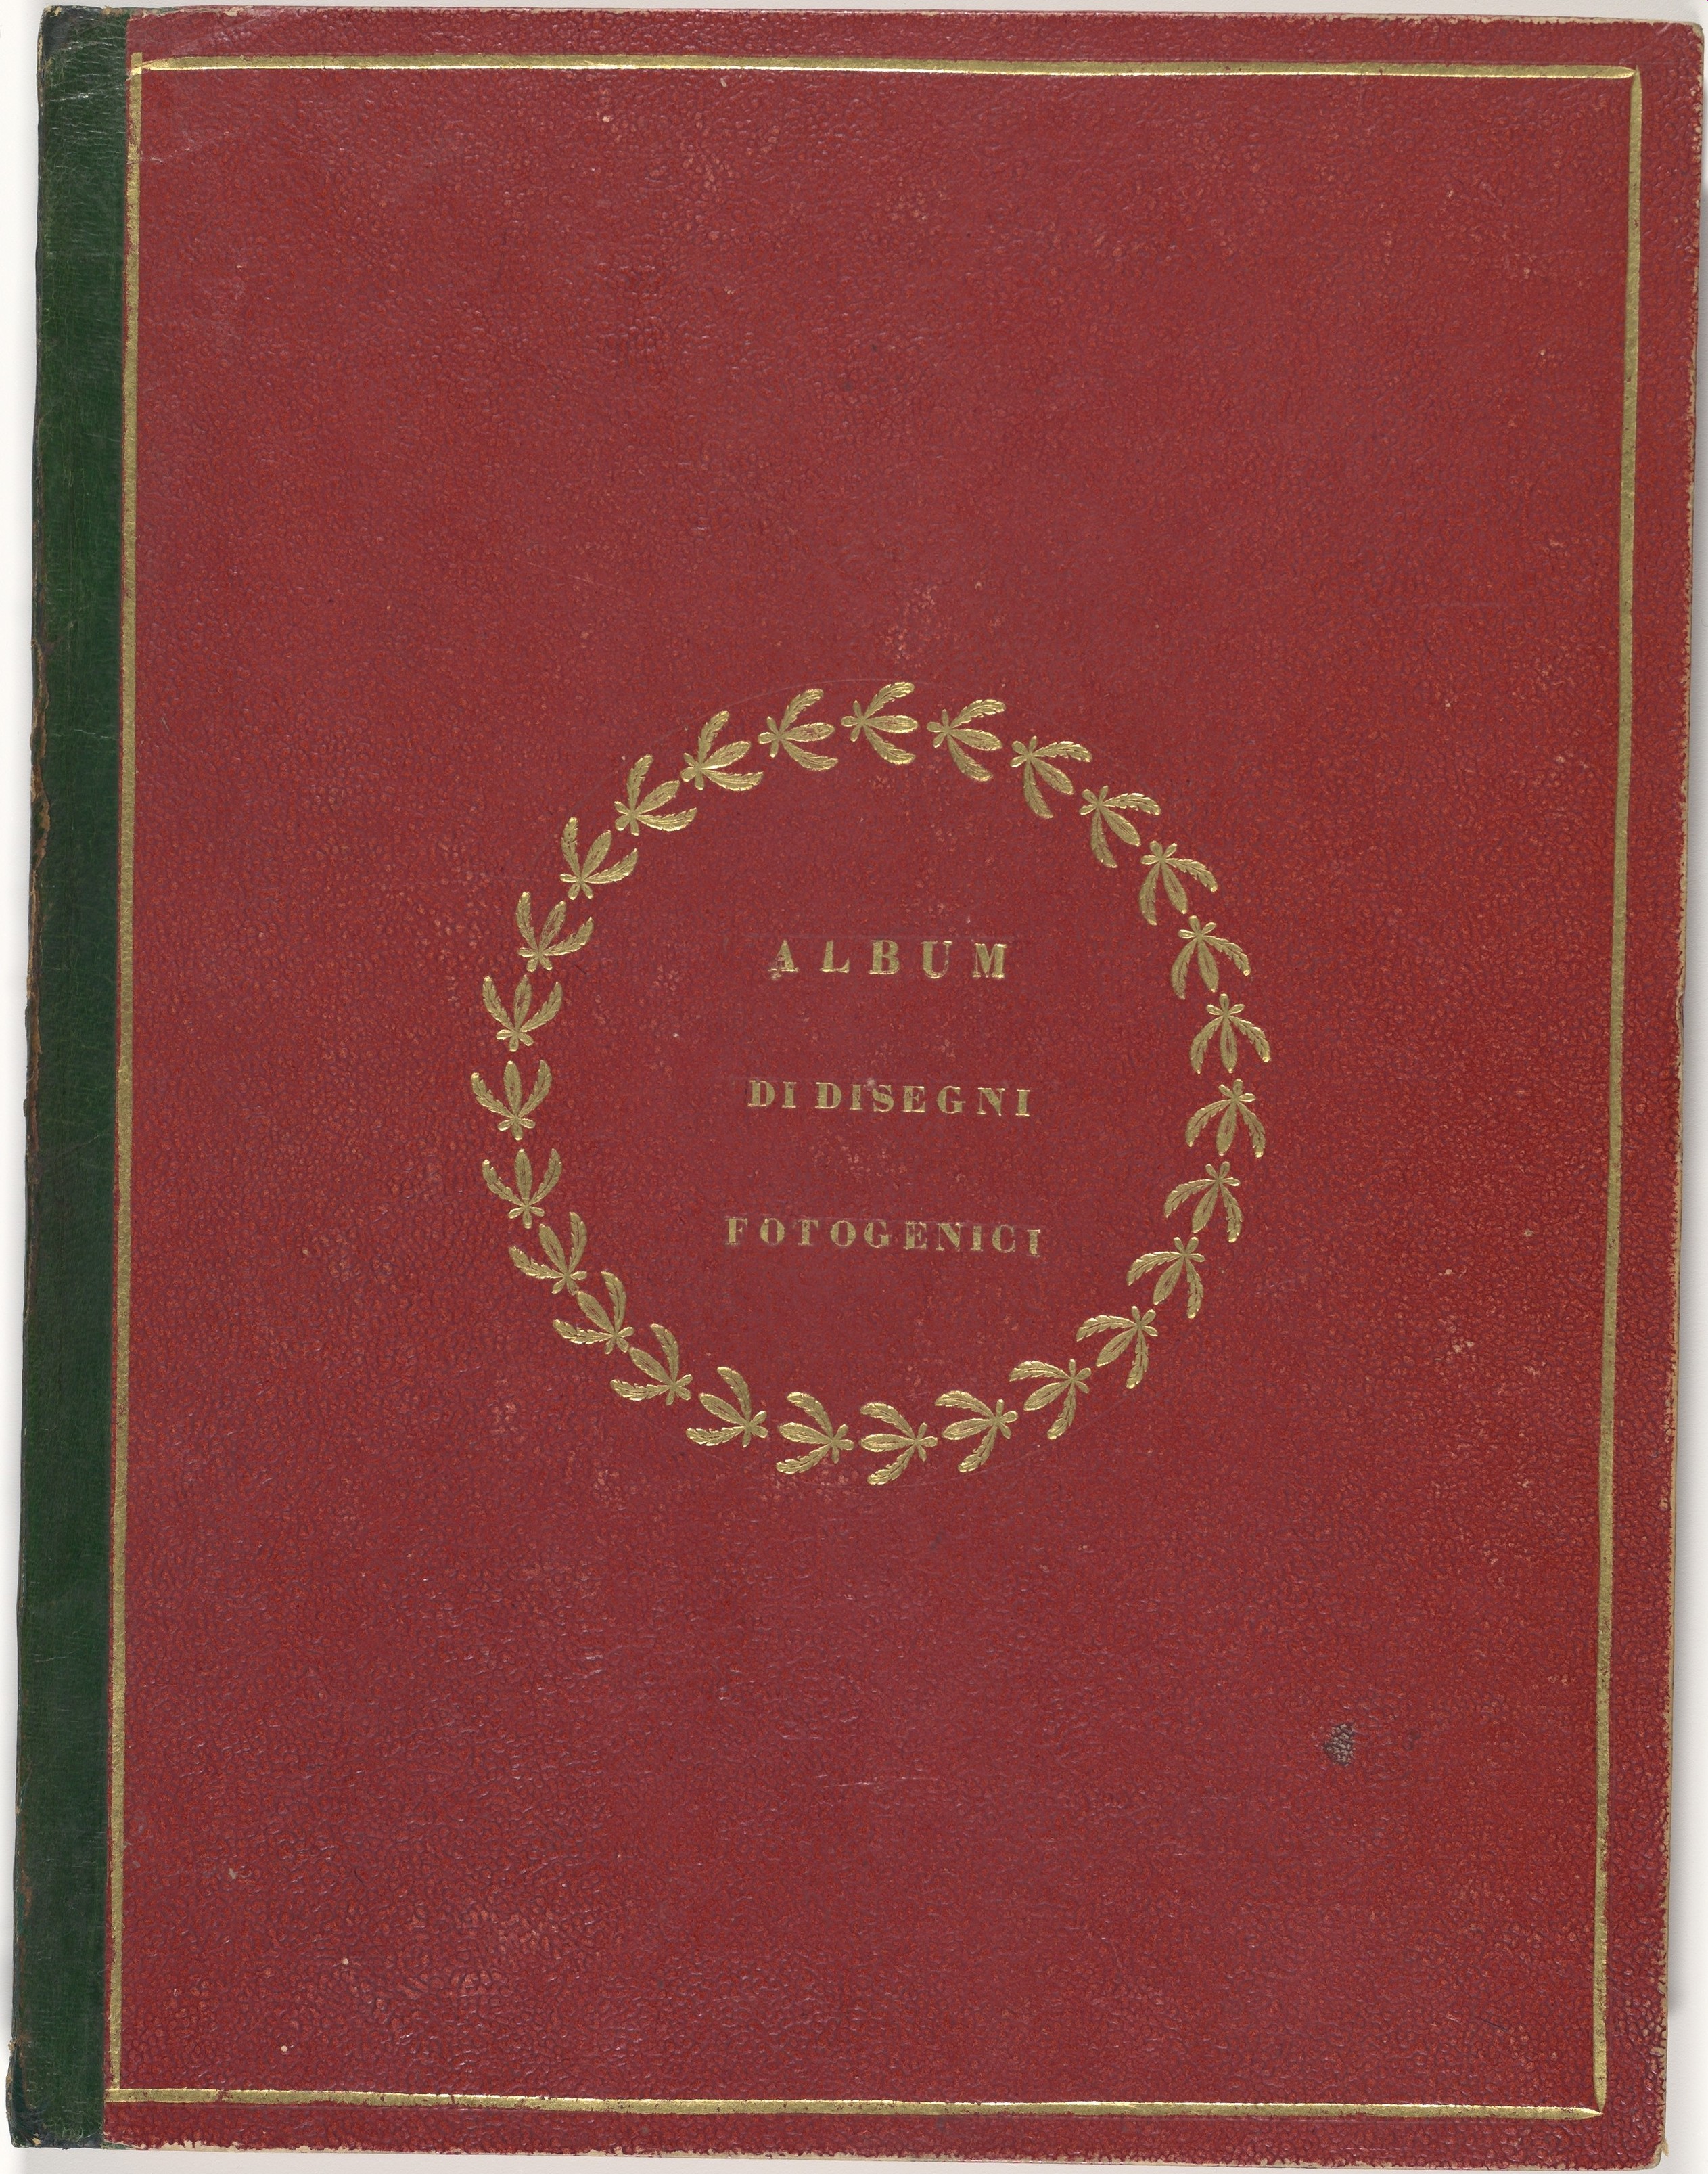 William Henry Fox Talbot, Album di disegni fotogenici